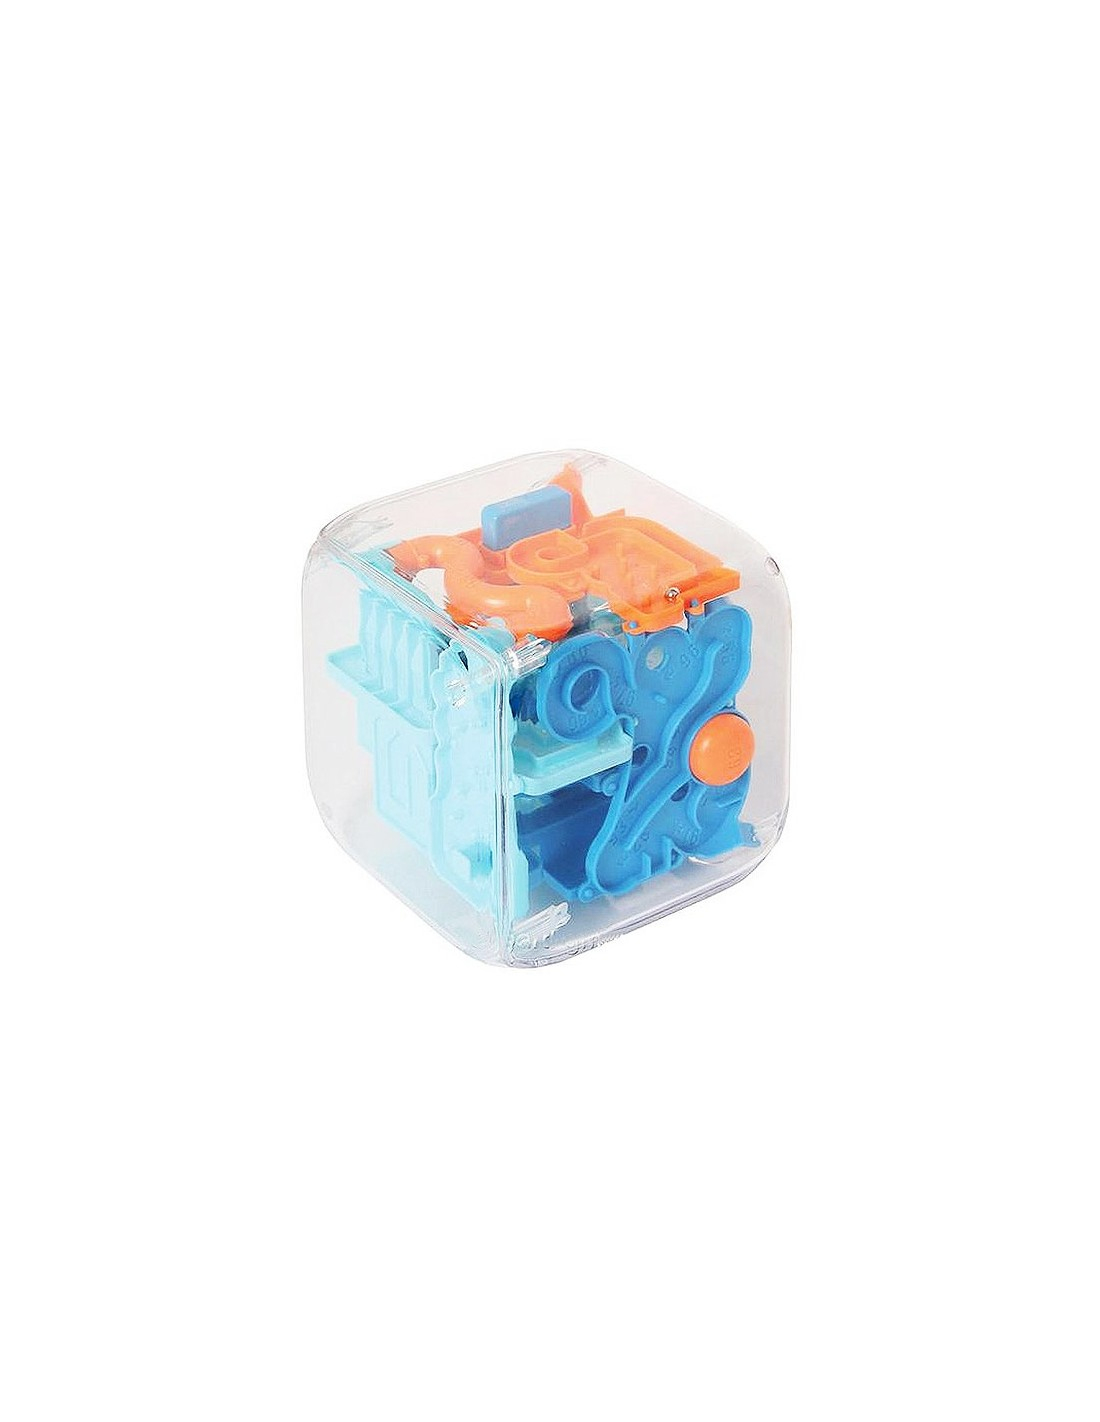 Le Cube Magique Amaze Cube Niveau Difficile Jeux Casse Tête Eureka! 3D à Labyrinthe Difficile